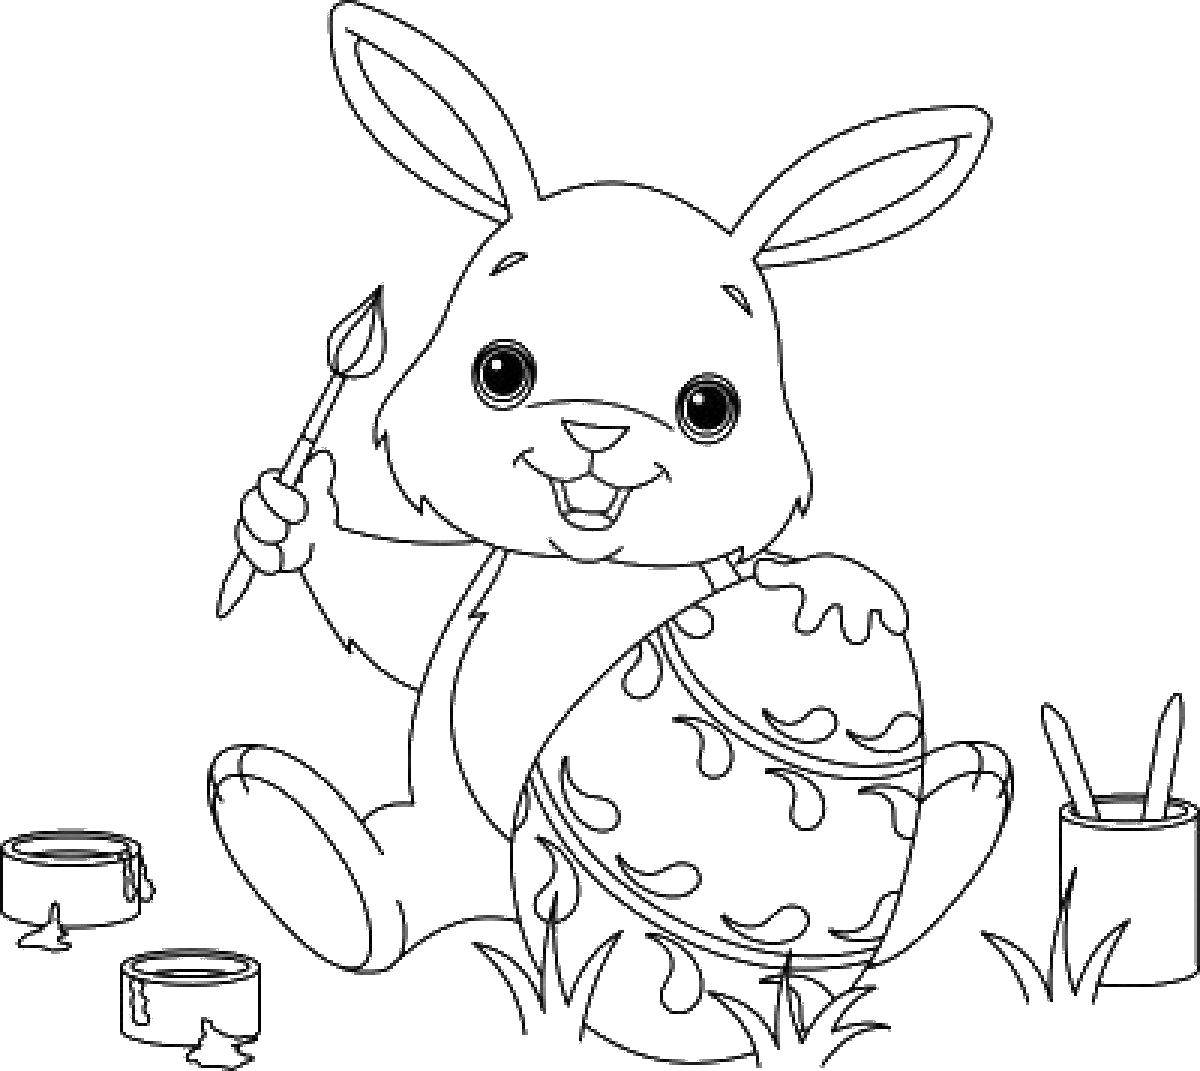   Кролик раскрашивает яйцо